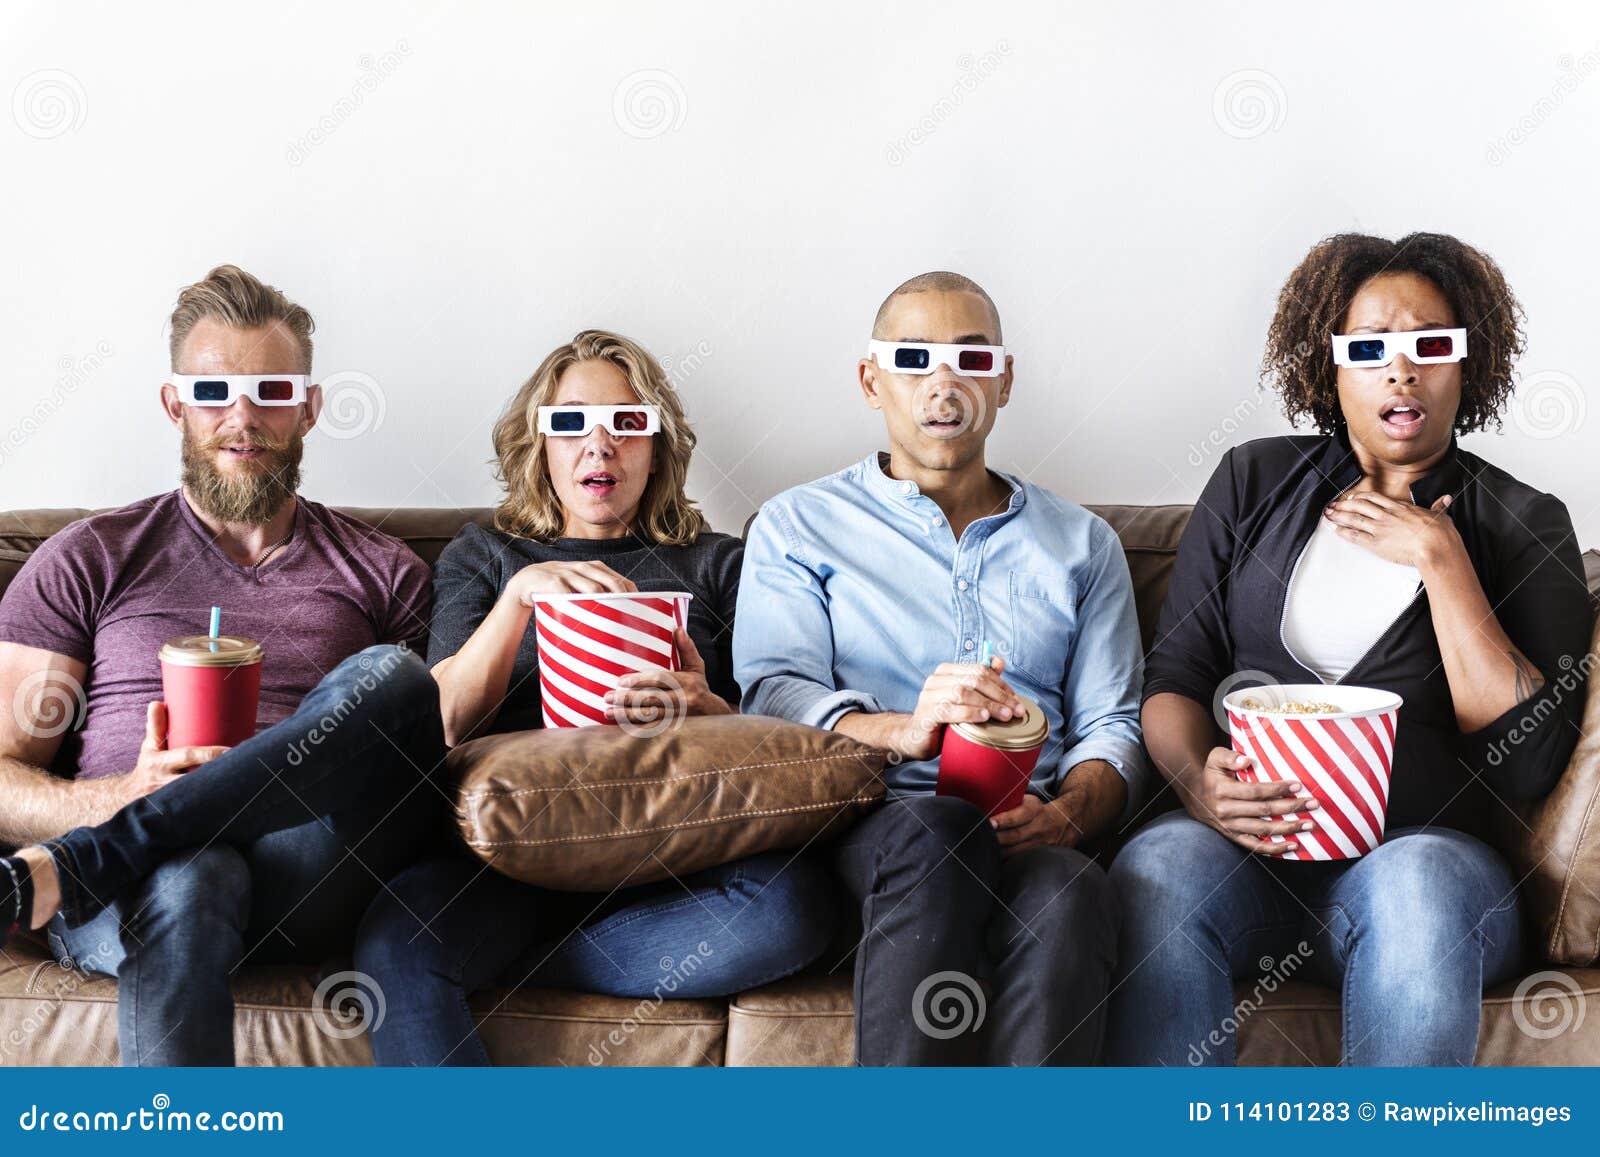 Friends watch a movie